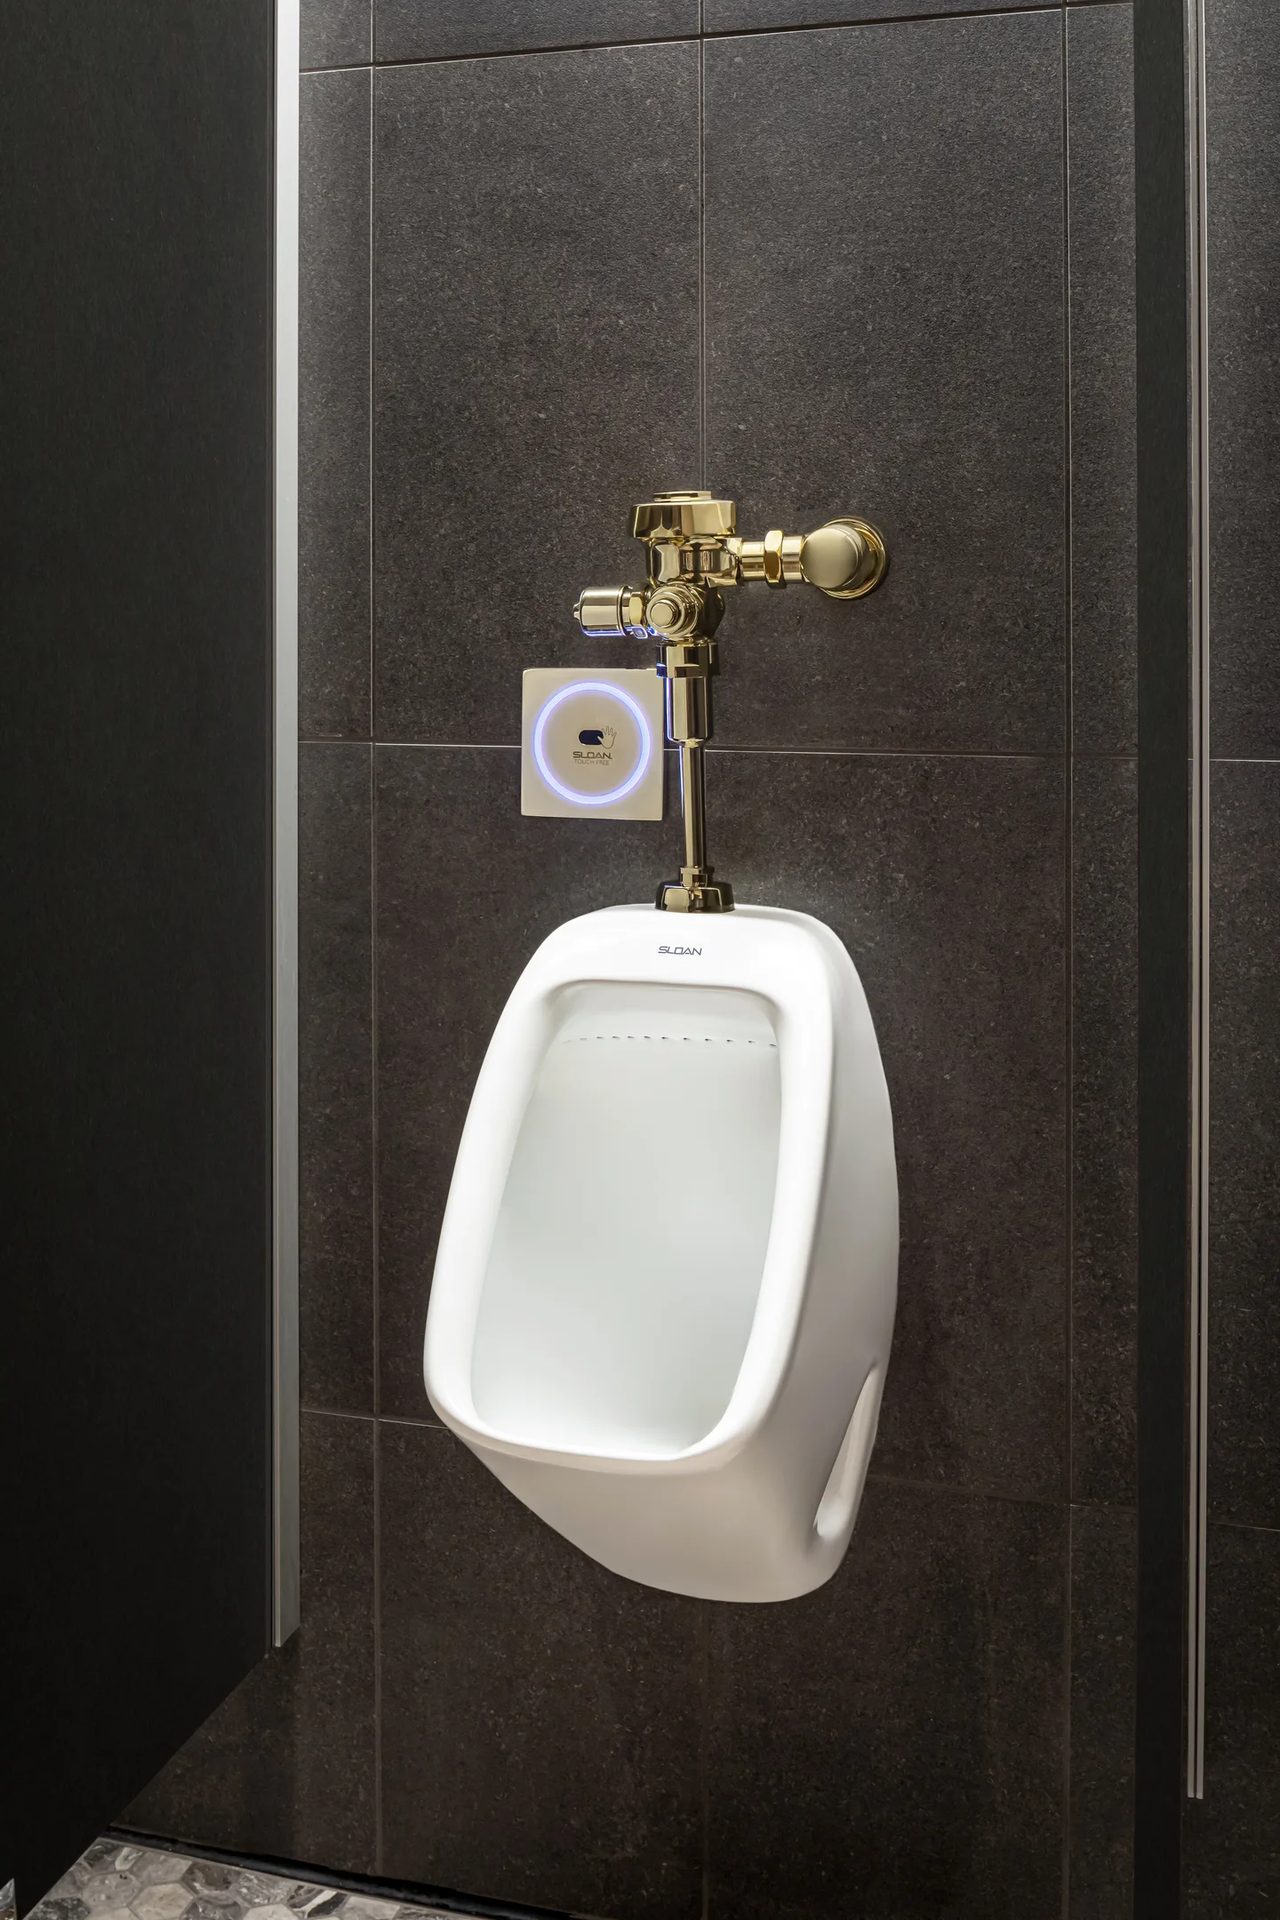 Plumbing fixture, Toilet, Urinal, Bathroom